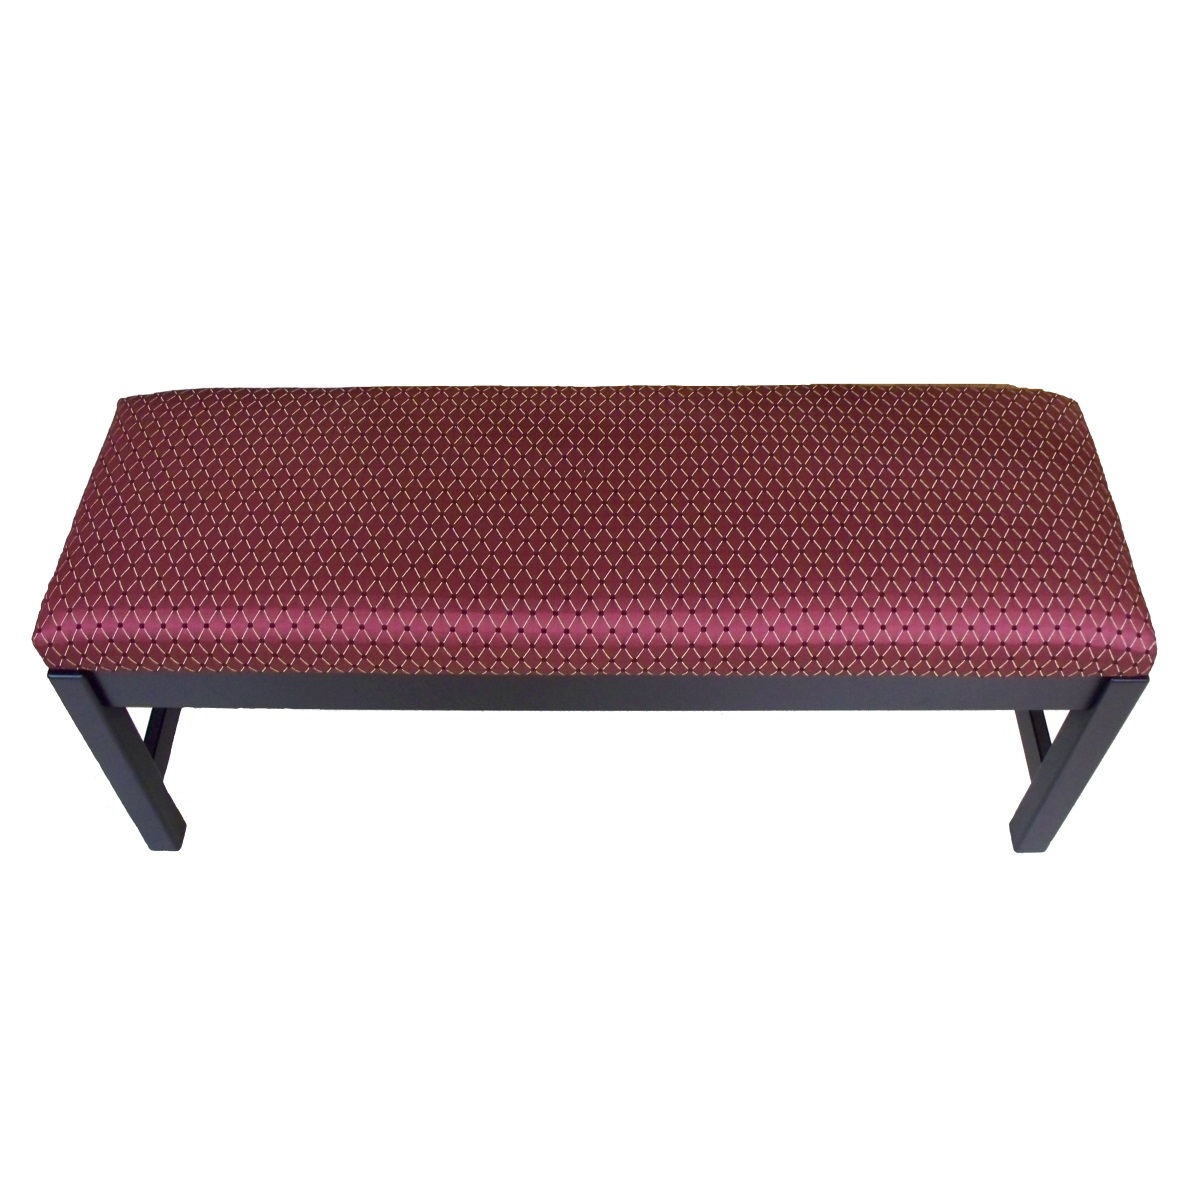 Custom Upholstered Bench Image